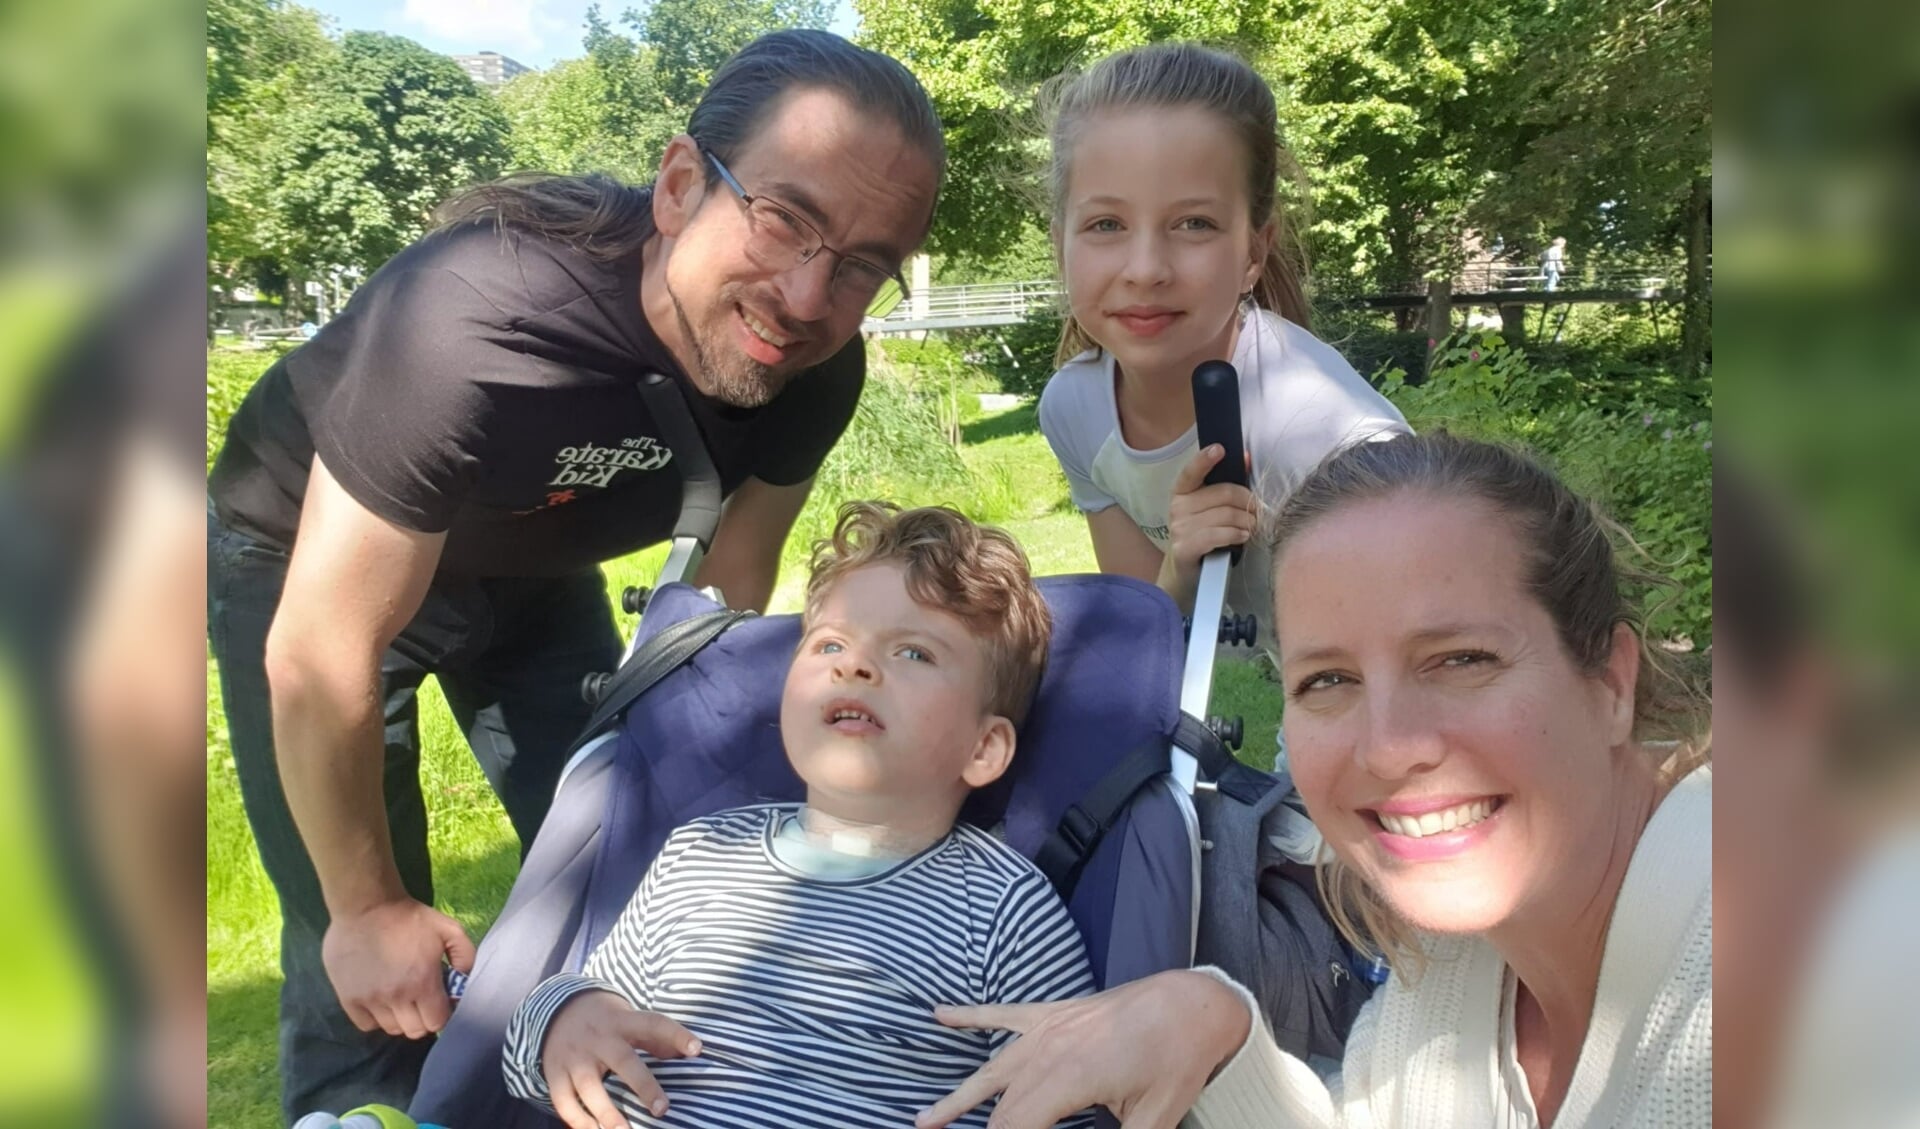 Het gezin Pelder is gestart met een crowdfundingactie voor zoon Aron.